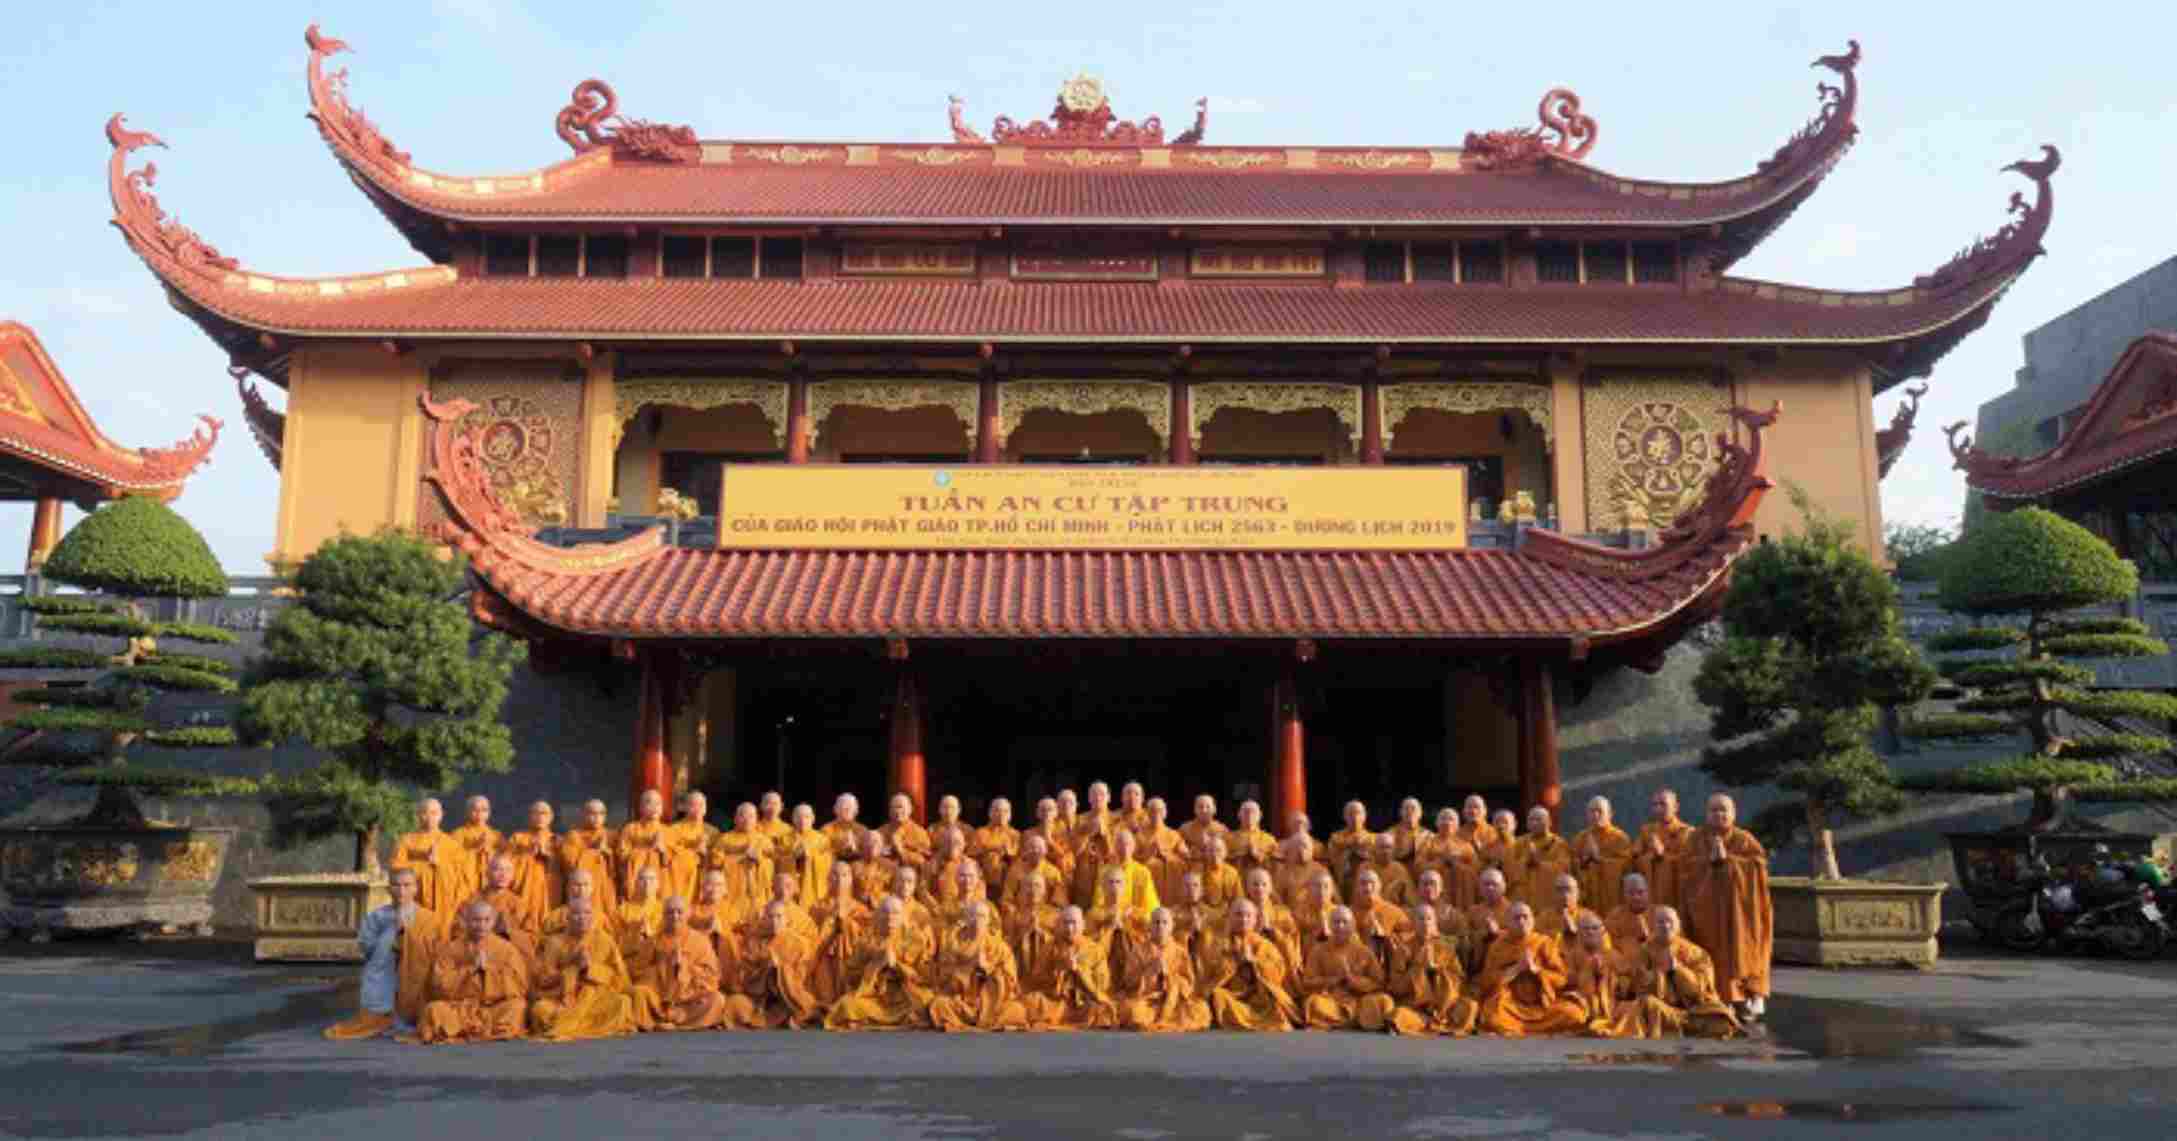 Việt Nam Quốc Tự là ngôi chùa được thành lập lâu đời ở nước ta